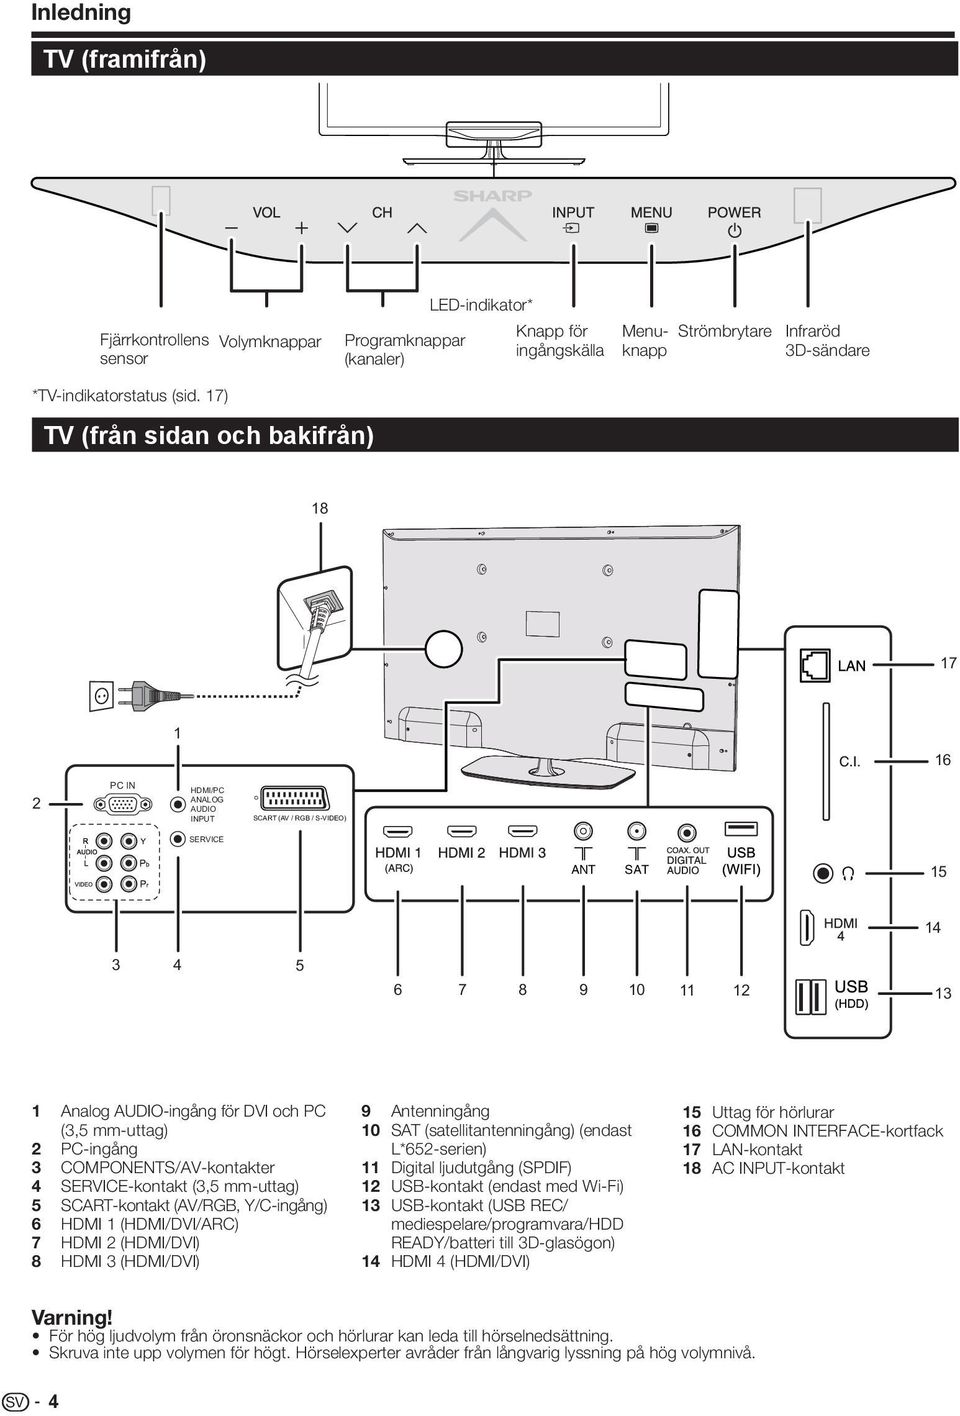 mm-uttag) 2 PC-ingång 3 COMPONENTS/AV-kontakter 4 SERVICE-kontakt (3,5 mm-uttag) 5 SCART-kontakt (AV/RGB, Y/C-ingång) 6 HDMI 1 (HDMI/DVI/ARC) 7 HDMI 2 (HDMI/DVI) 8 HDMI 3 (HDMI/DVI) 9 Antenningång 10